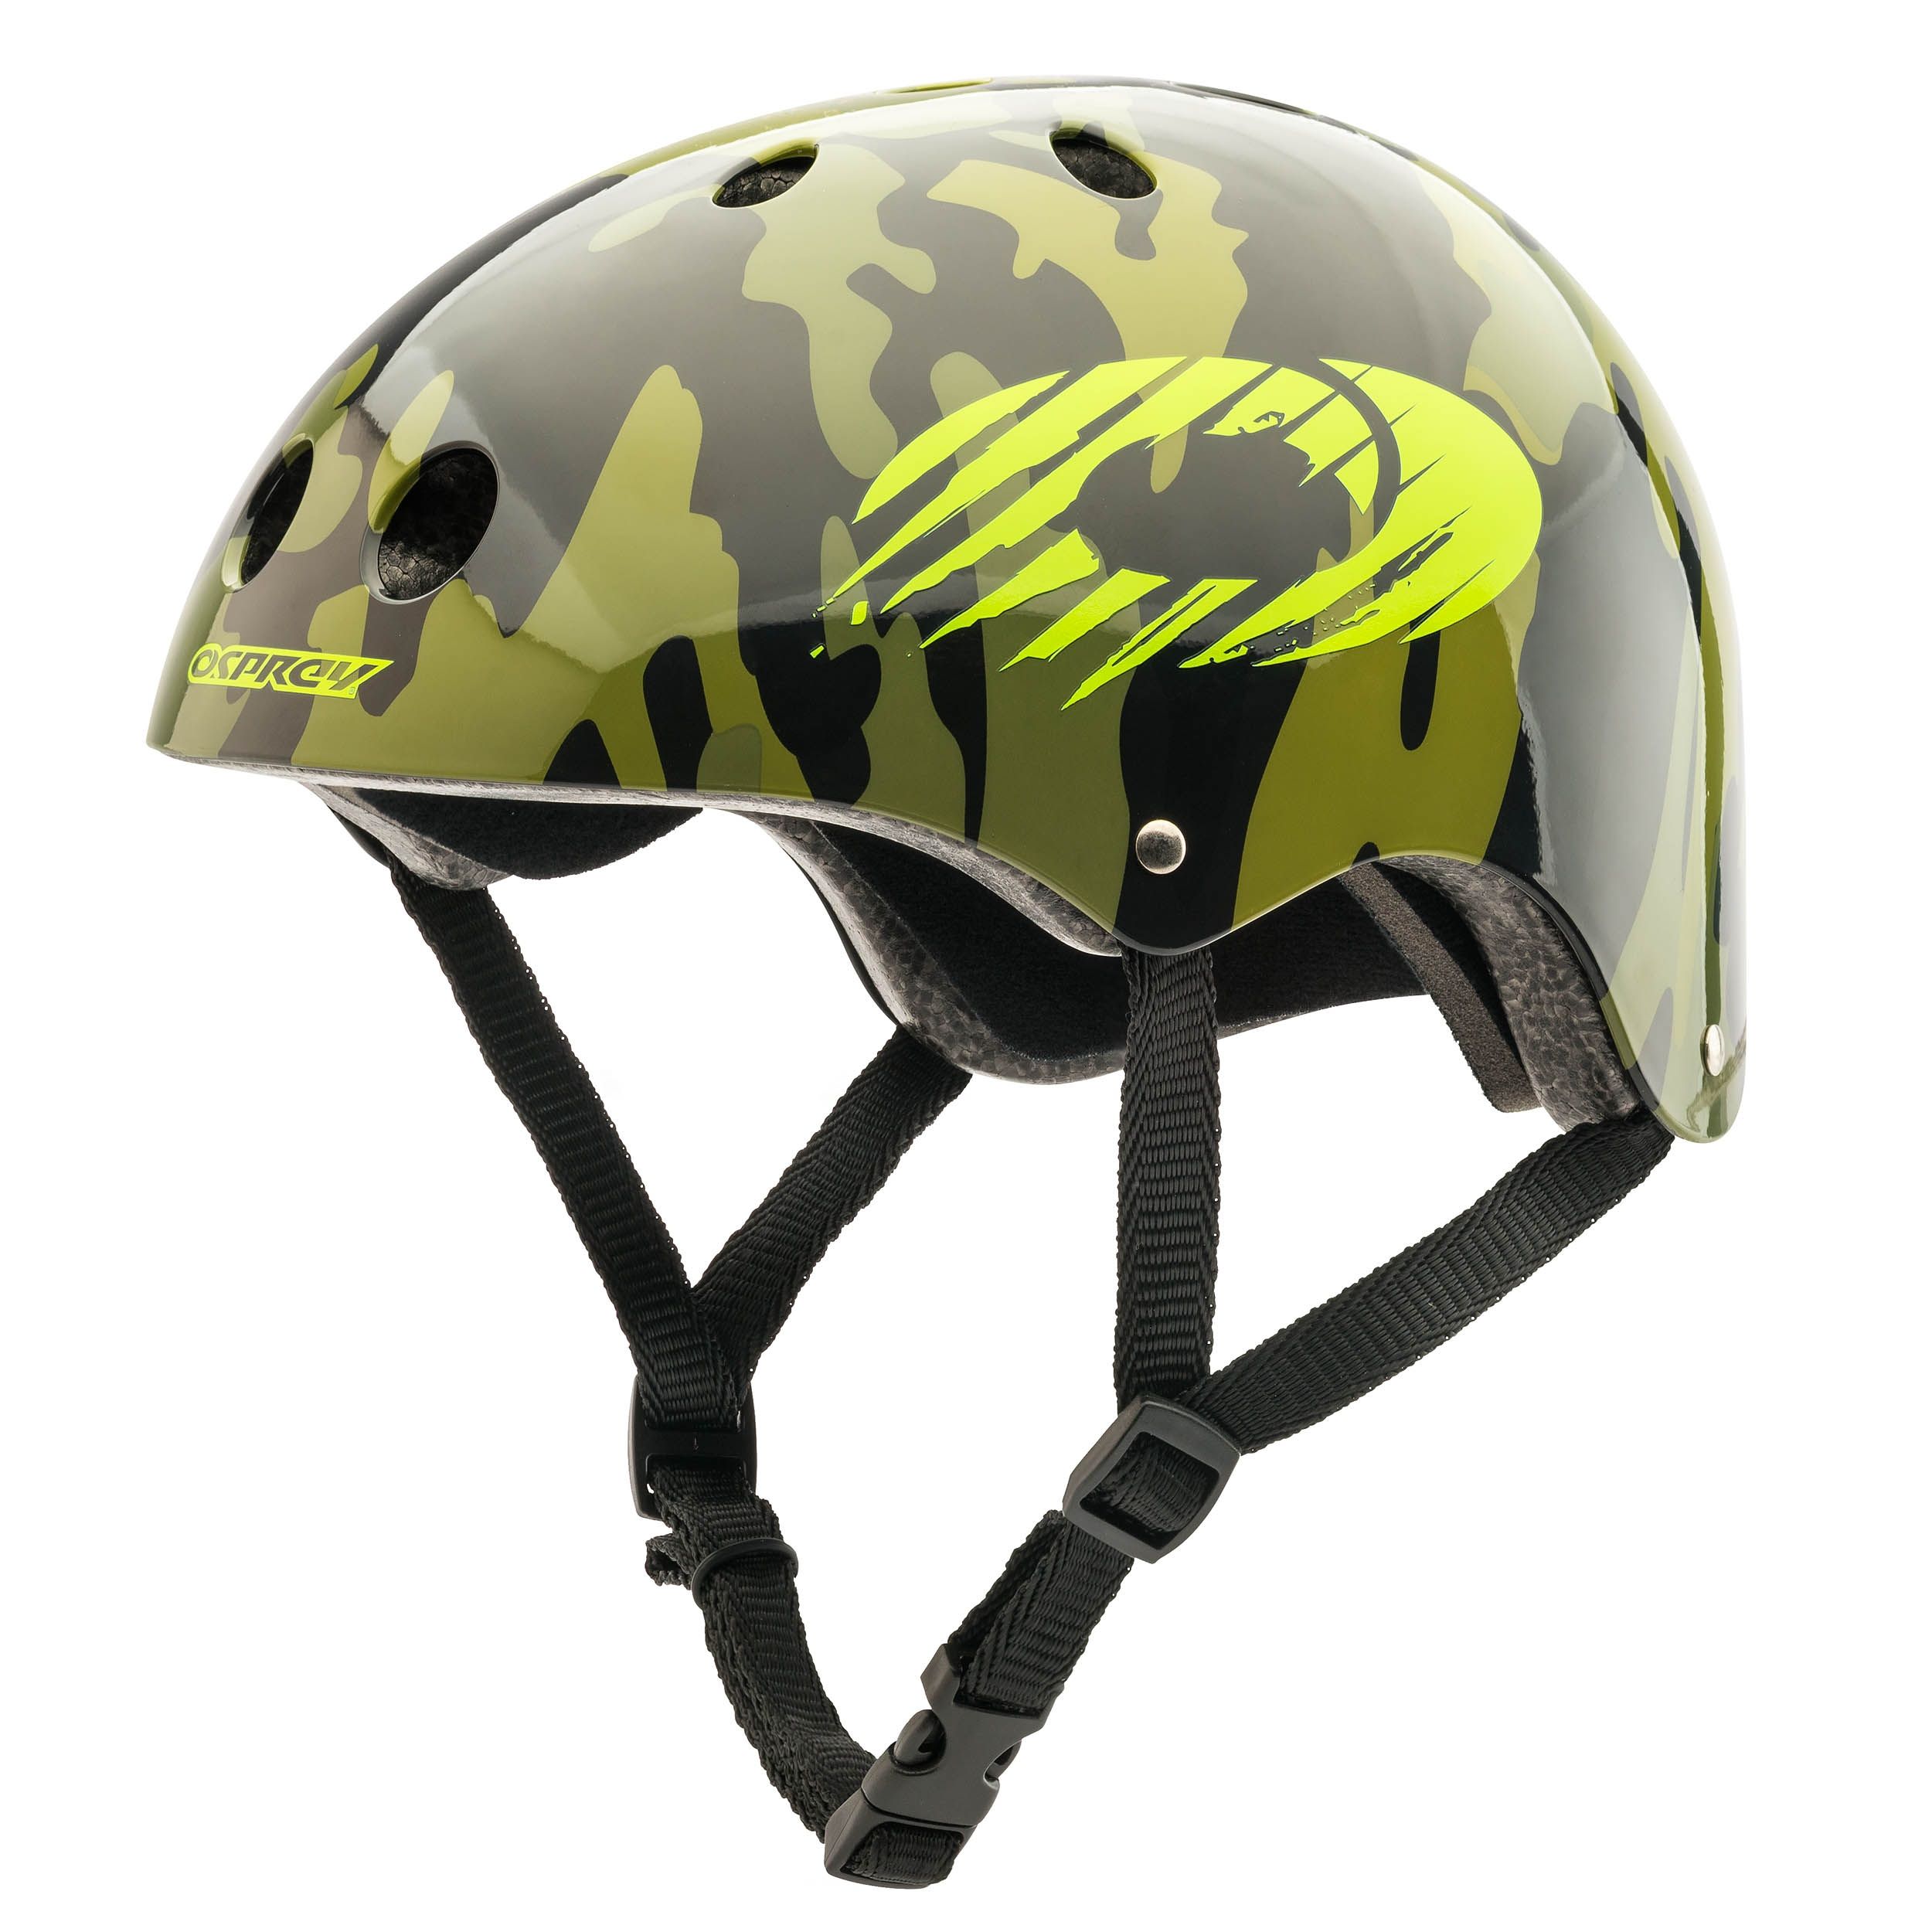 Osprey Kids Skate BMX Scooter Helmet ABS Shell Child Head Blue Green White Black 